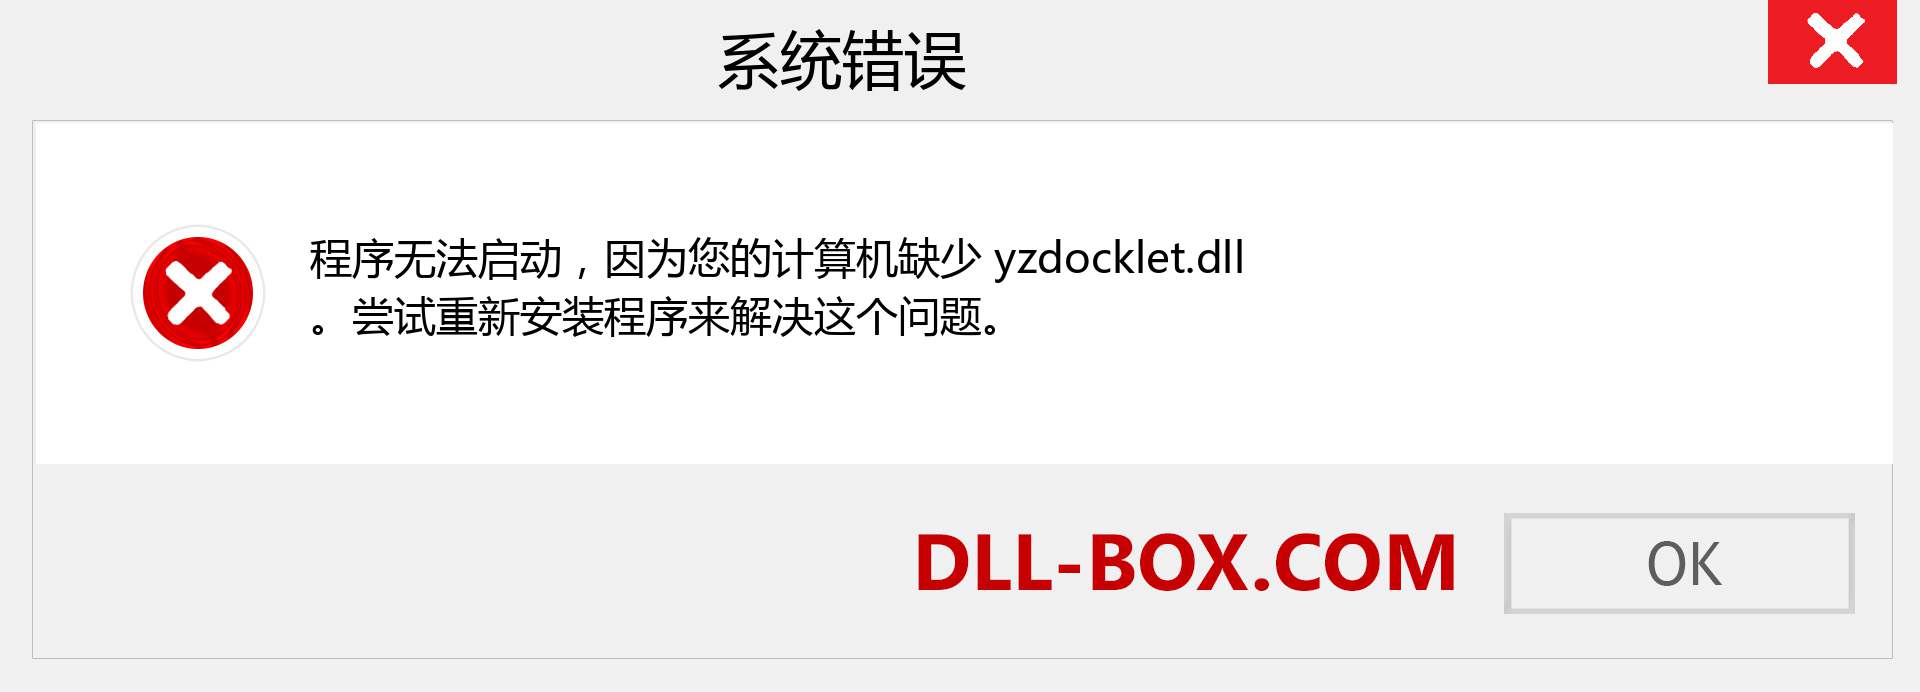 yzdocklet.dll 文件丢失？。 适用于 Windows 7、8、10 的下载 - 修复 Windows、照片、图像上的 yzdocklet dll 丢失错误